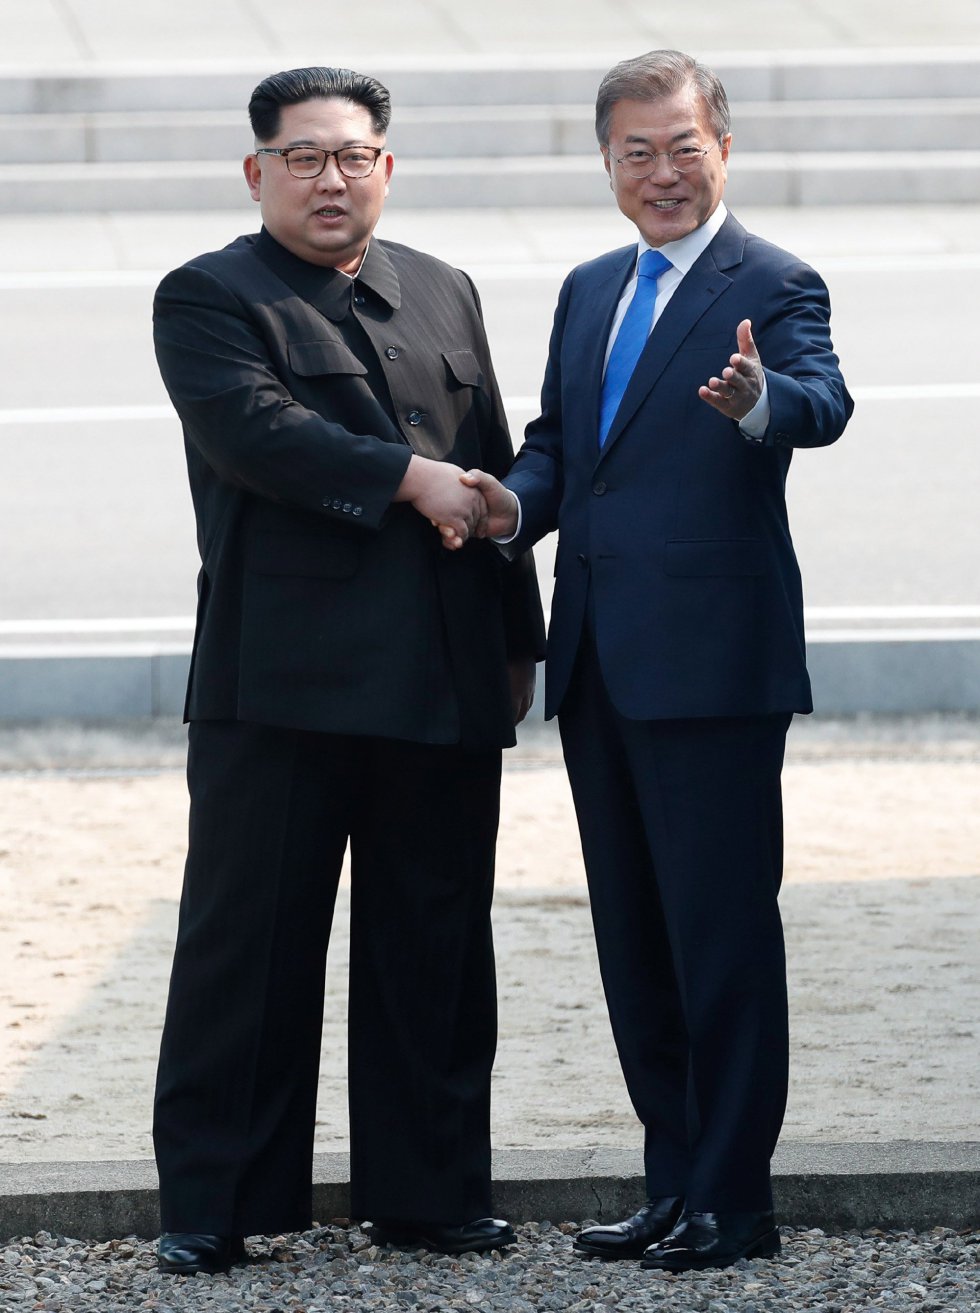 ¿Cuánto mide Kim Jong Un? - Real height - Página 2 1524792520_924865_1524793829_album_normal